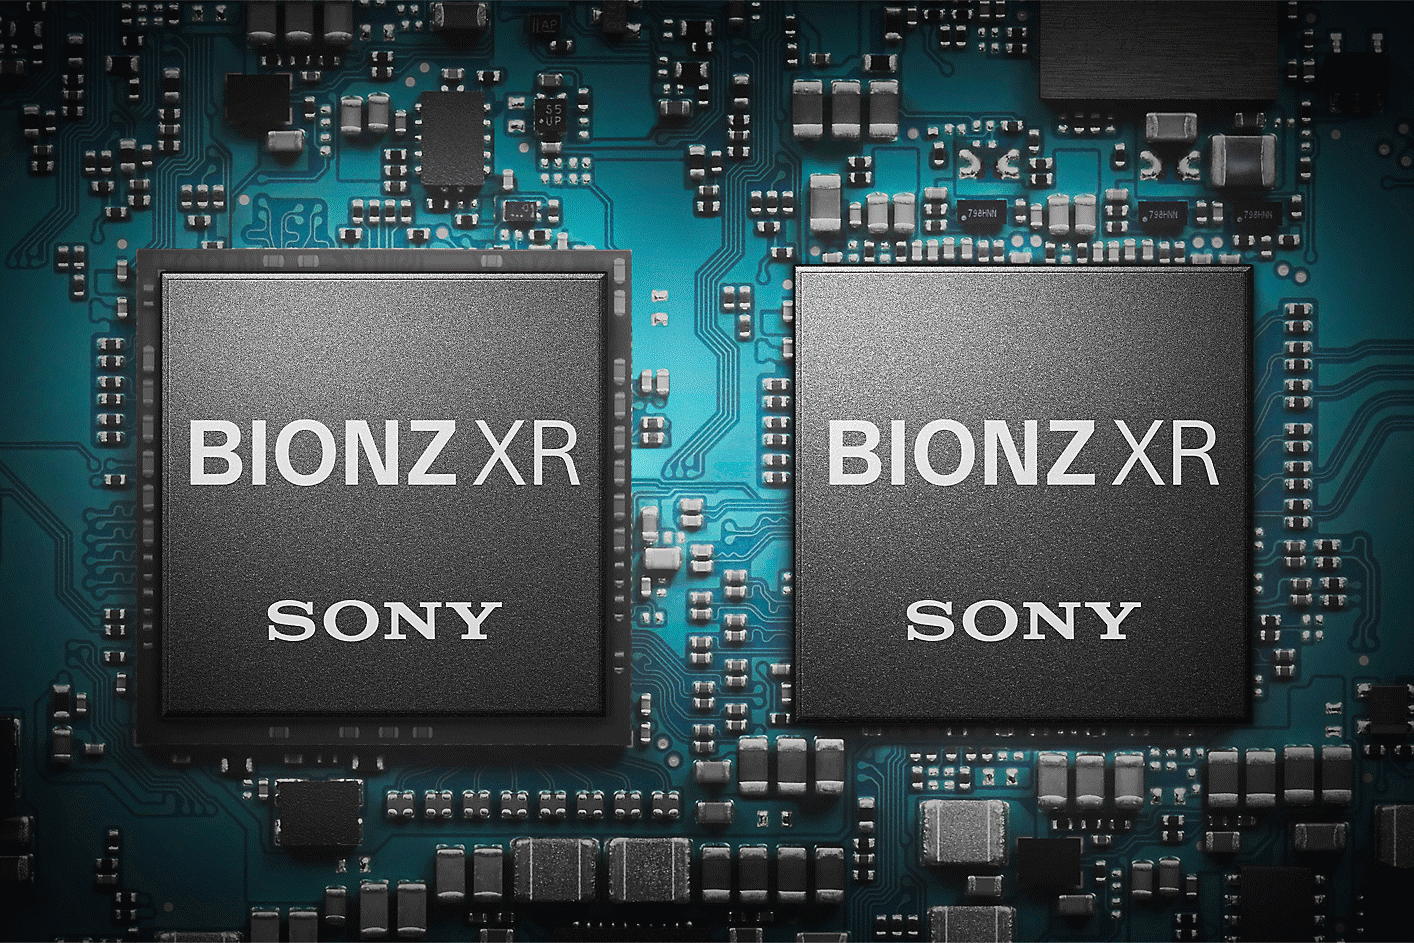 Εικόνα του σύστηματος επεξεργασίας εικόνας BIONZ XR στη συσκευή